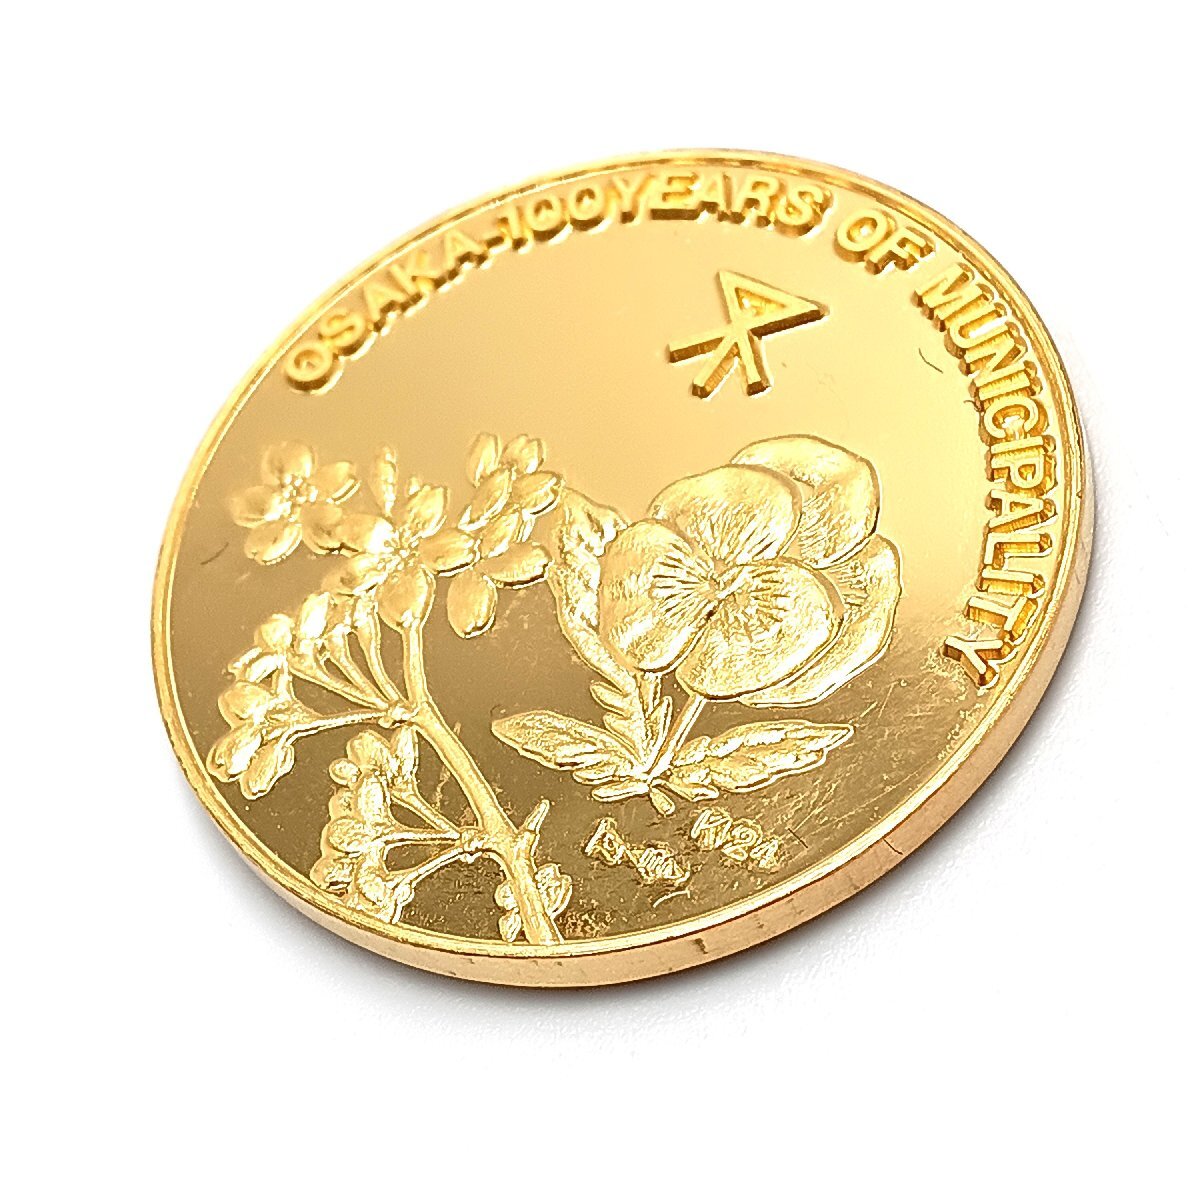 ホールマーク付き 純金メダル 大阪市制100周年記念公式メダル 純金製 22g コイン 記念メダル K24 純金 平成元年4月　化粧箱入 fe ABC1_画像3